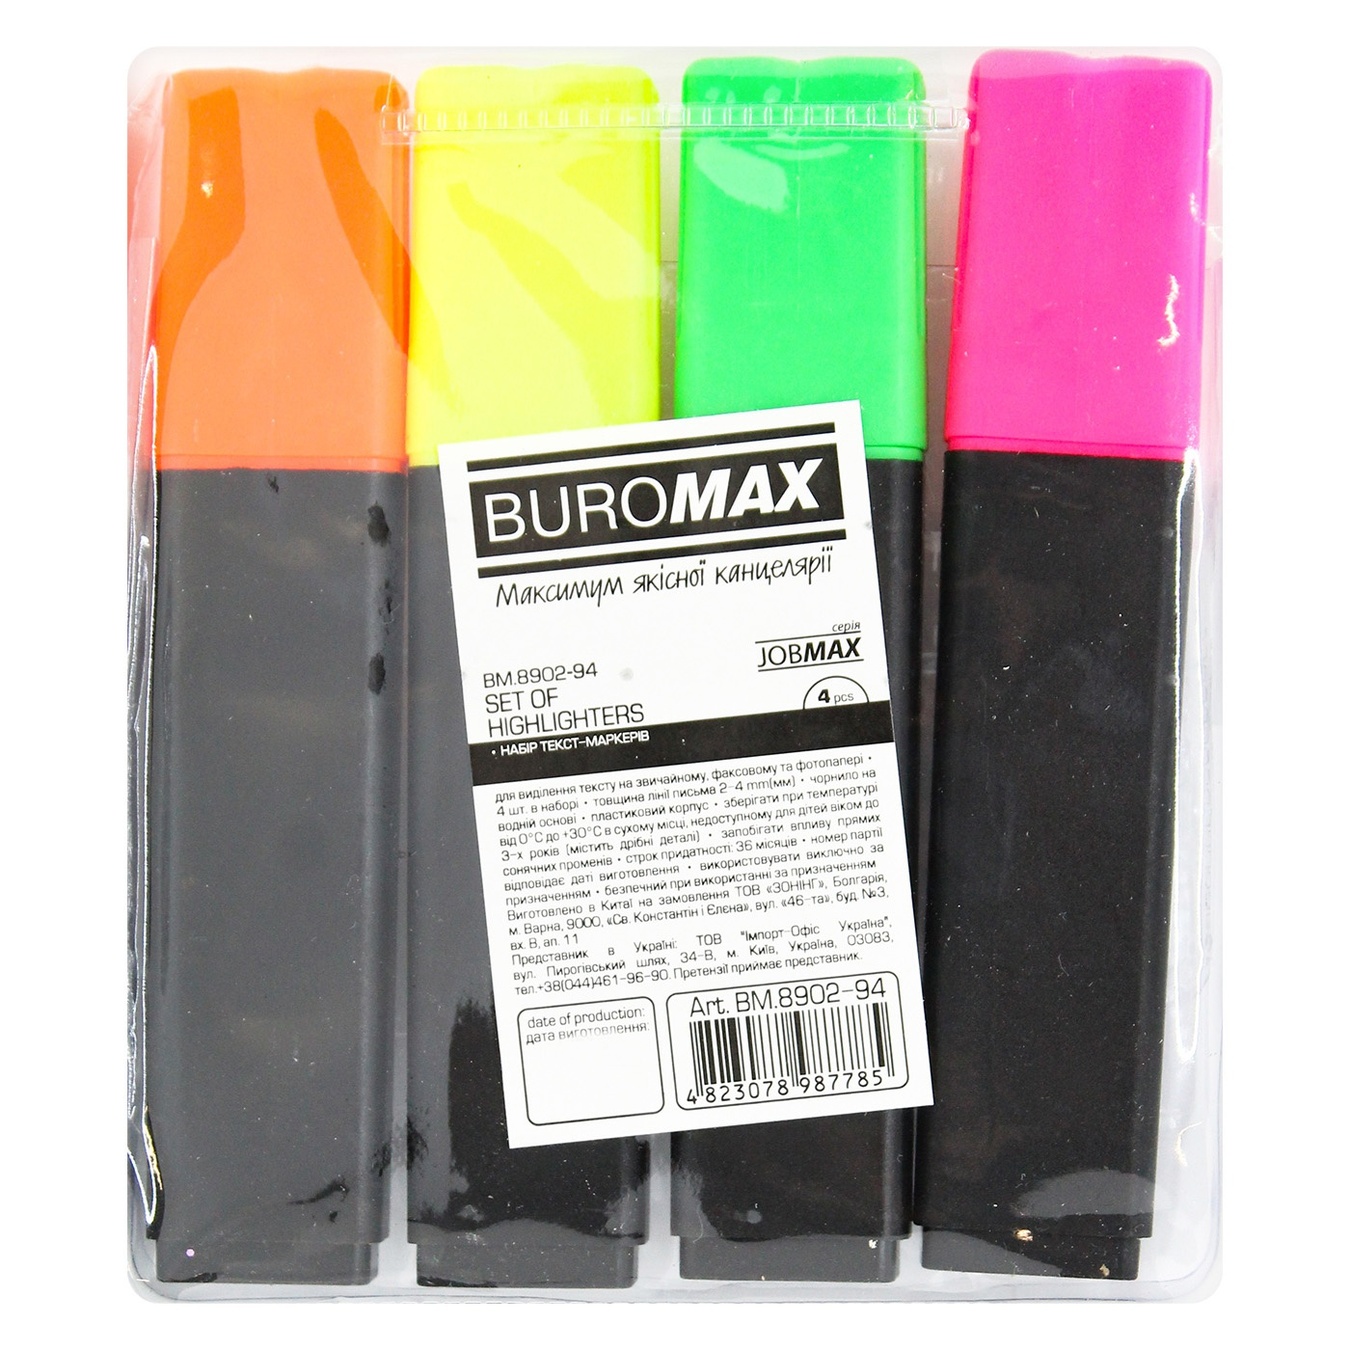 Набор текст-маркеров цветных Buromax Jobmax водное основание 2-4 мм 4шт